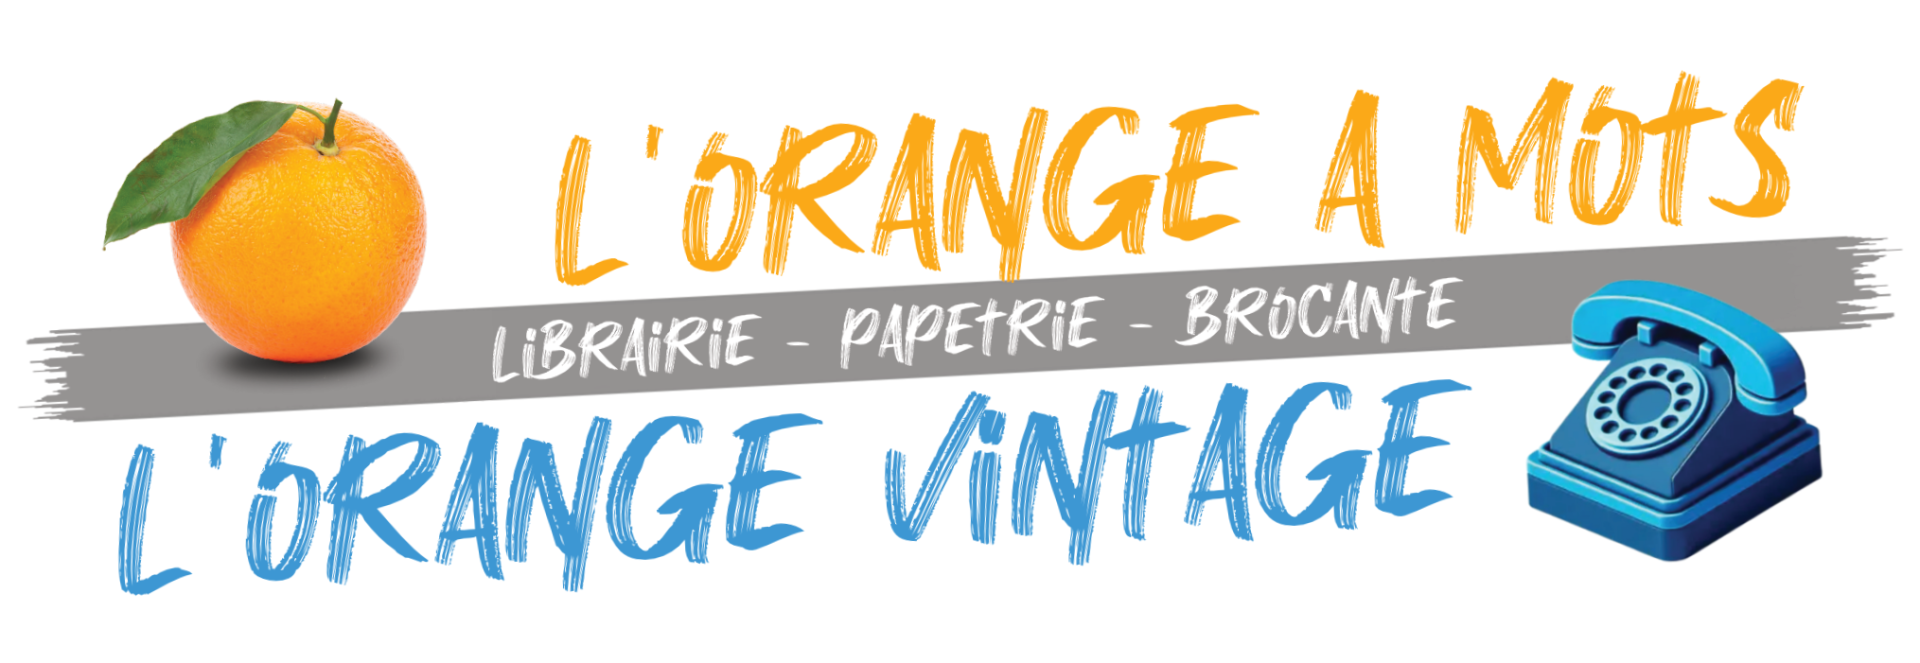 L'Orange à Mots / L'Orange Vintage